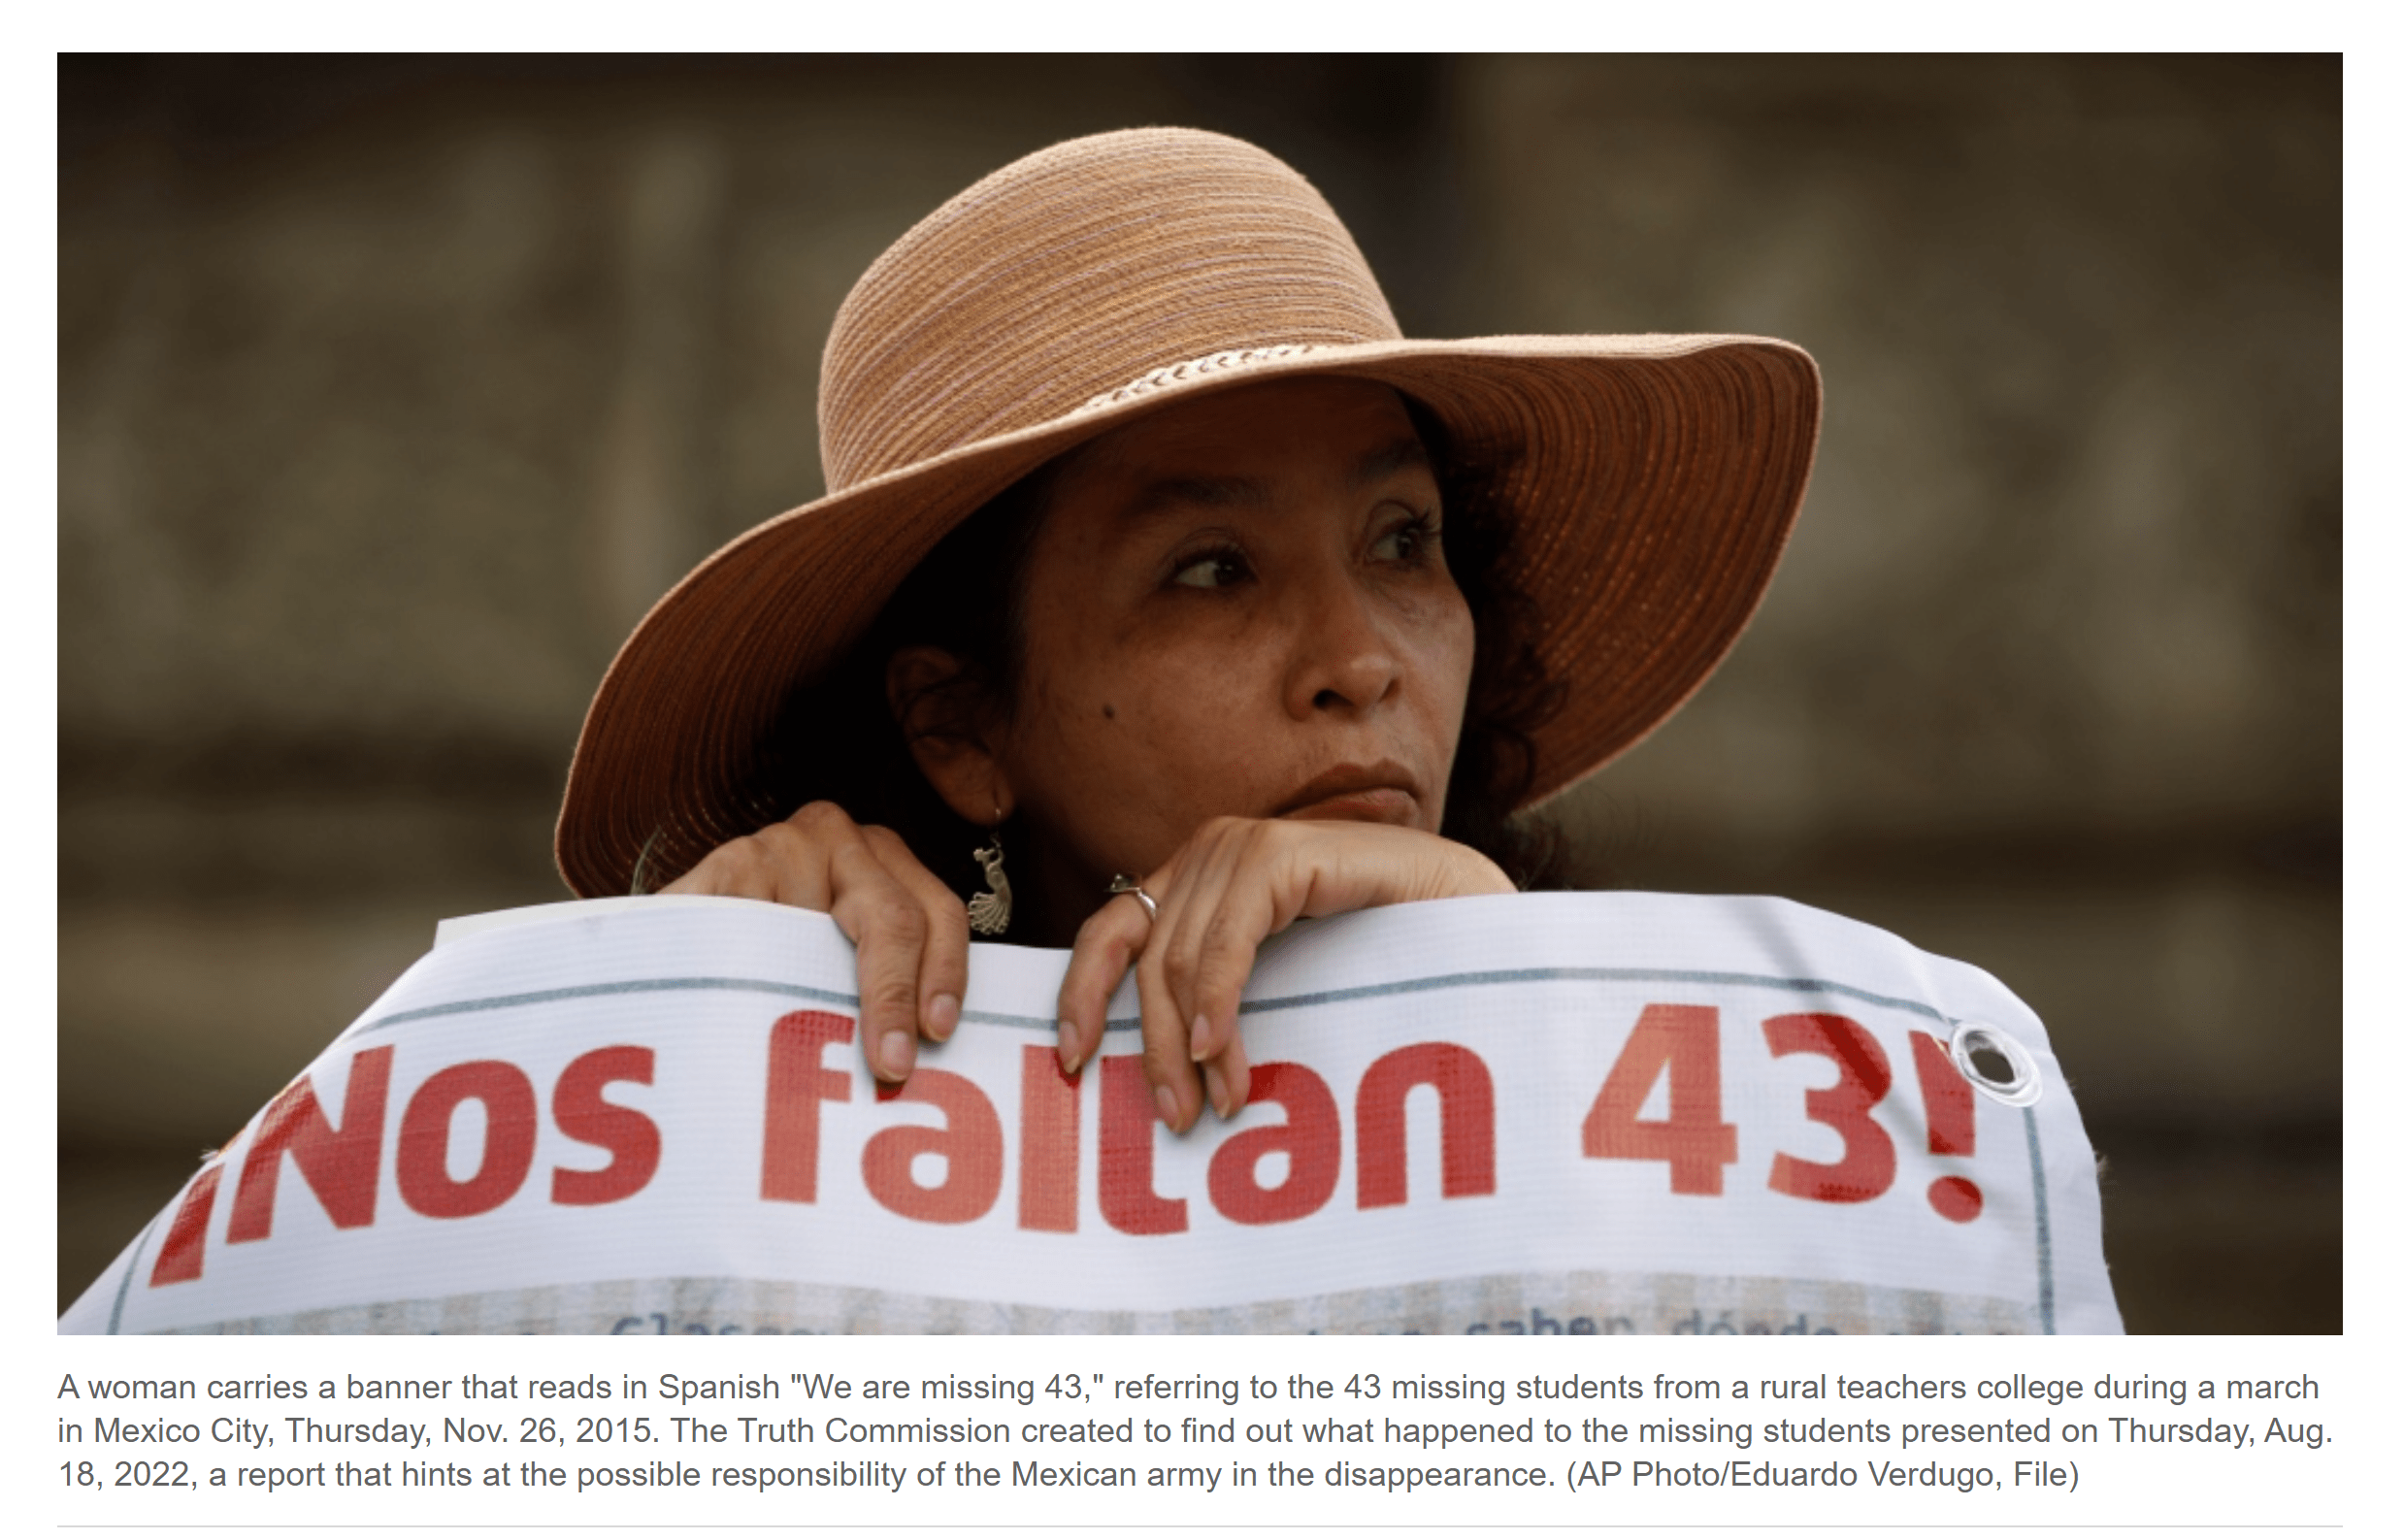 مکزیک دادستان کل سابق را در ارتباط با ناپدید شدن 43 دانشجو دستگیر کرد